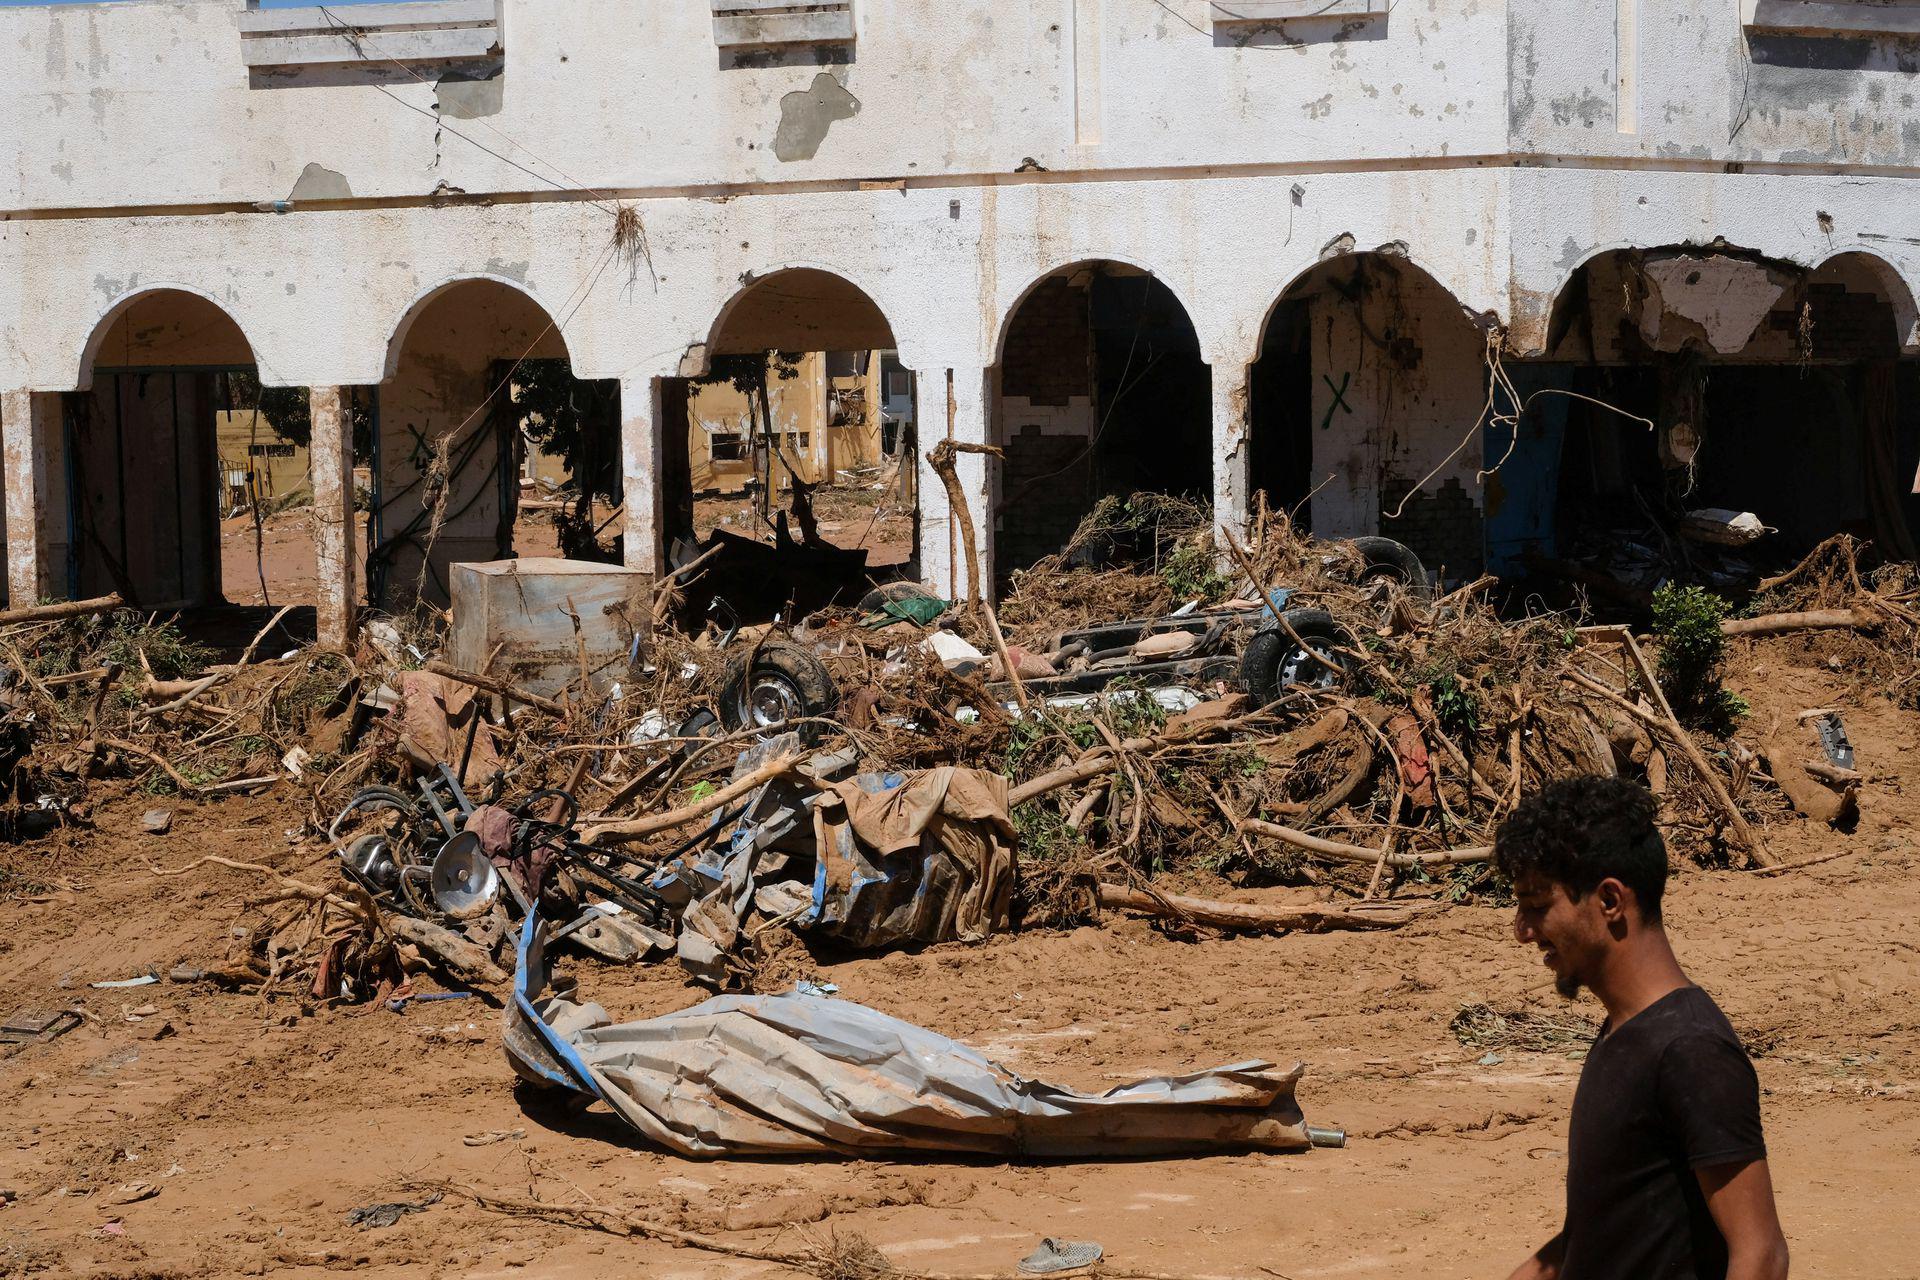 Vỡ đập ở Libya: Tang thương cảnh 1/4 thành phố bị 